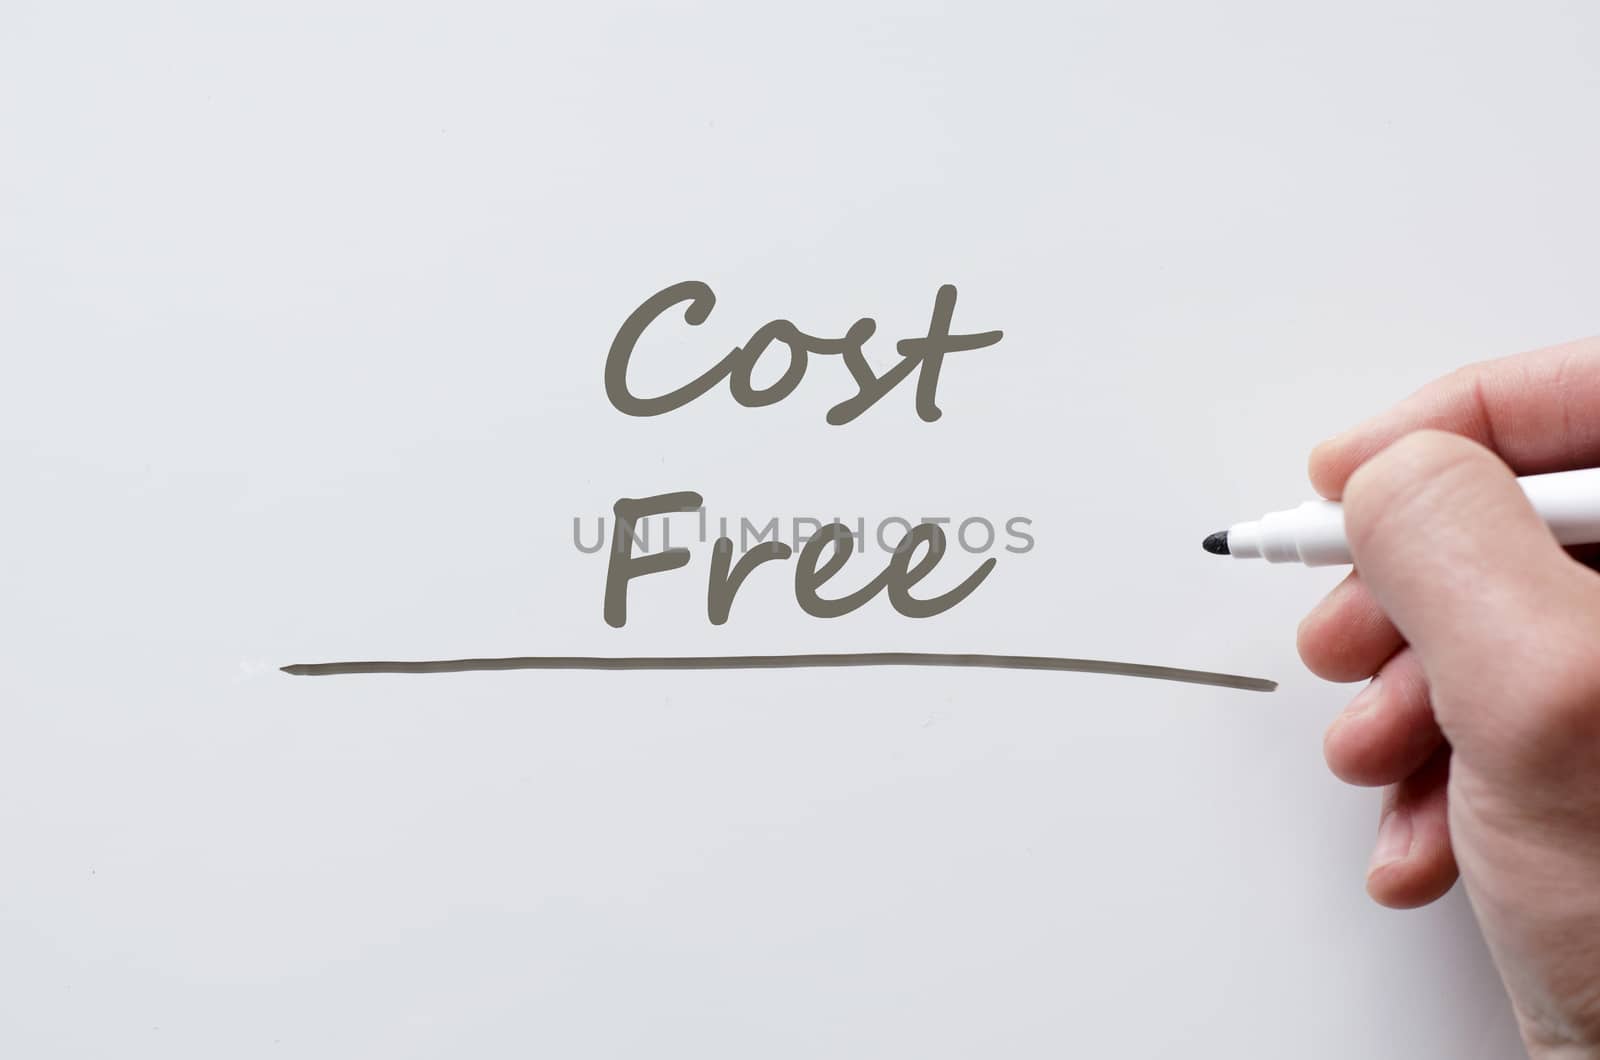 Cost free written on whiteboard by eenevski